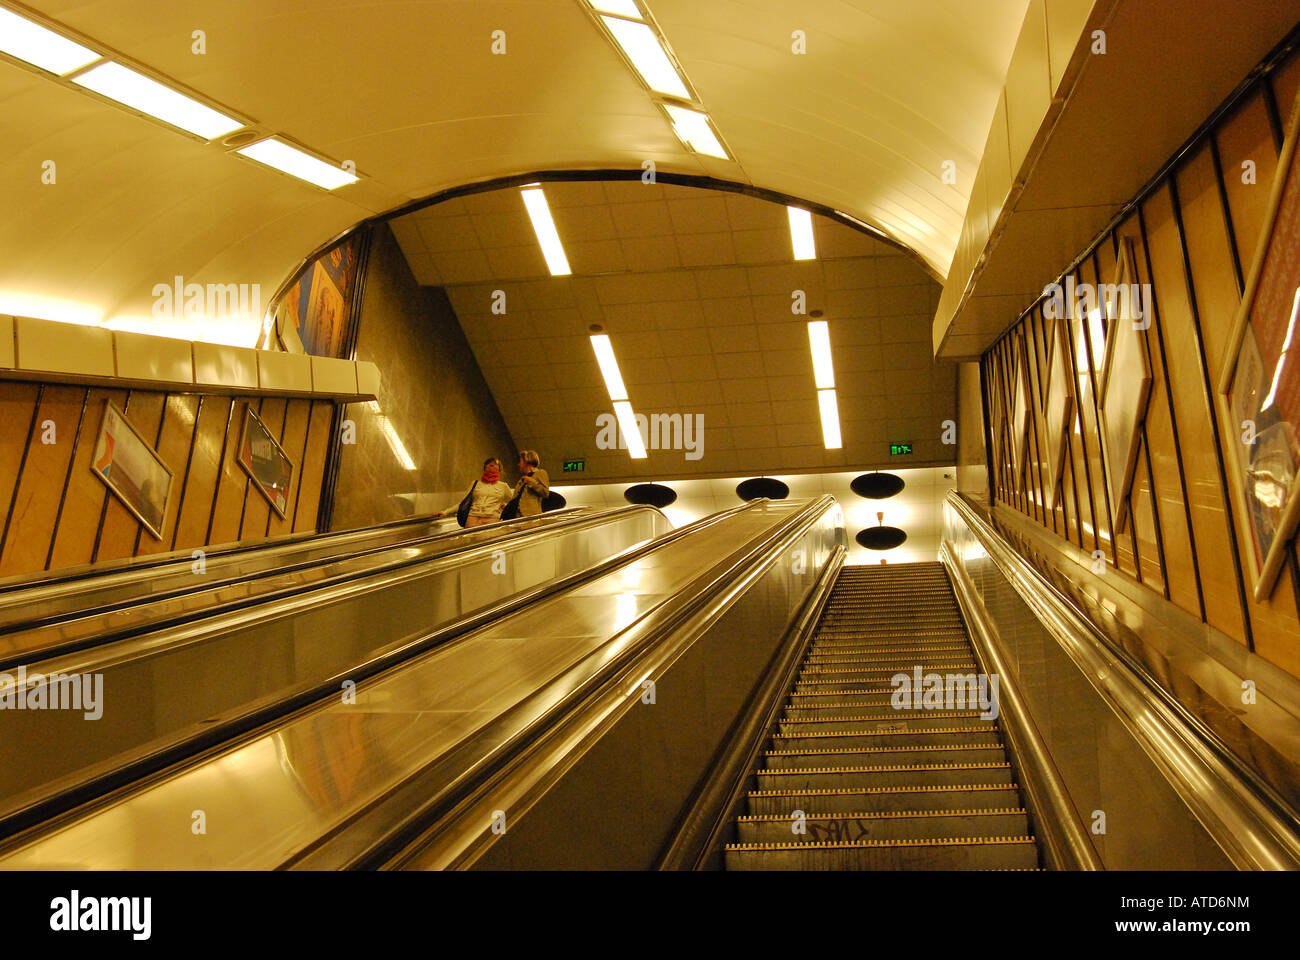 Esculator métro, station de métro Deak ter, Pest, Budapest, Hongrie Banque D'Images